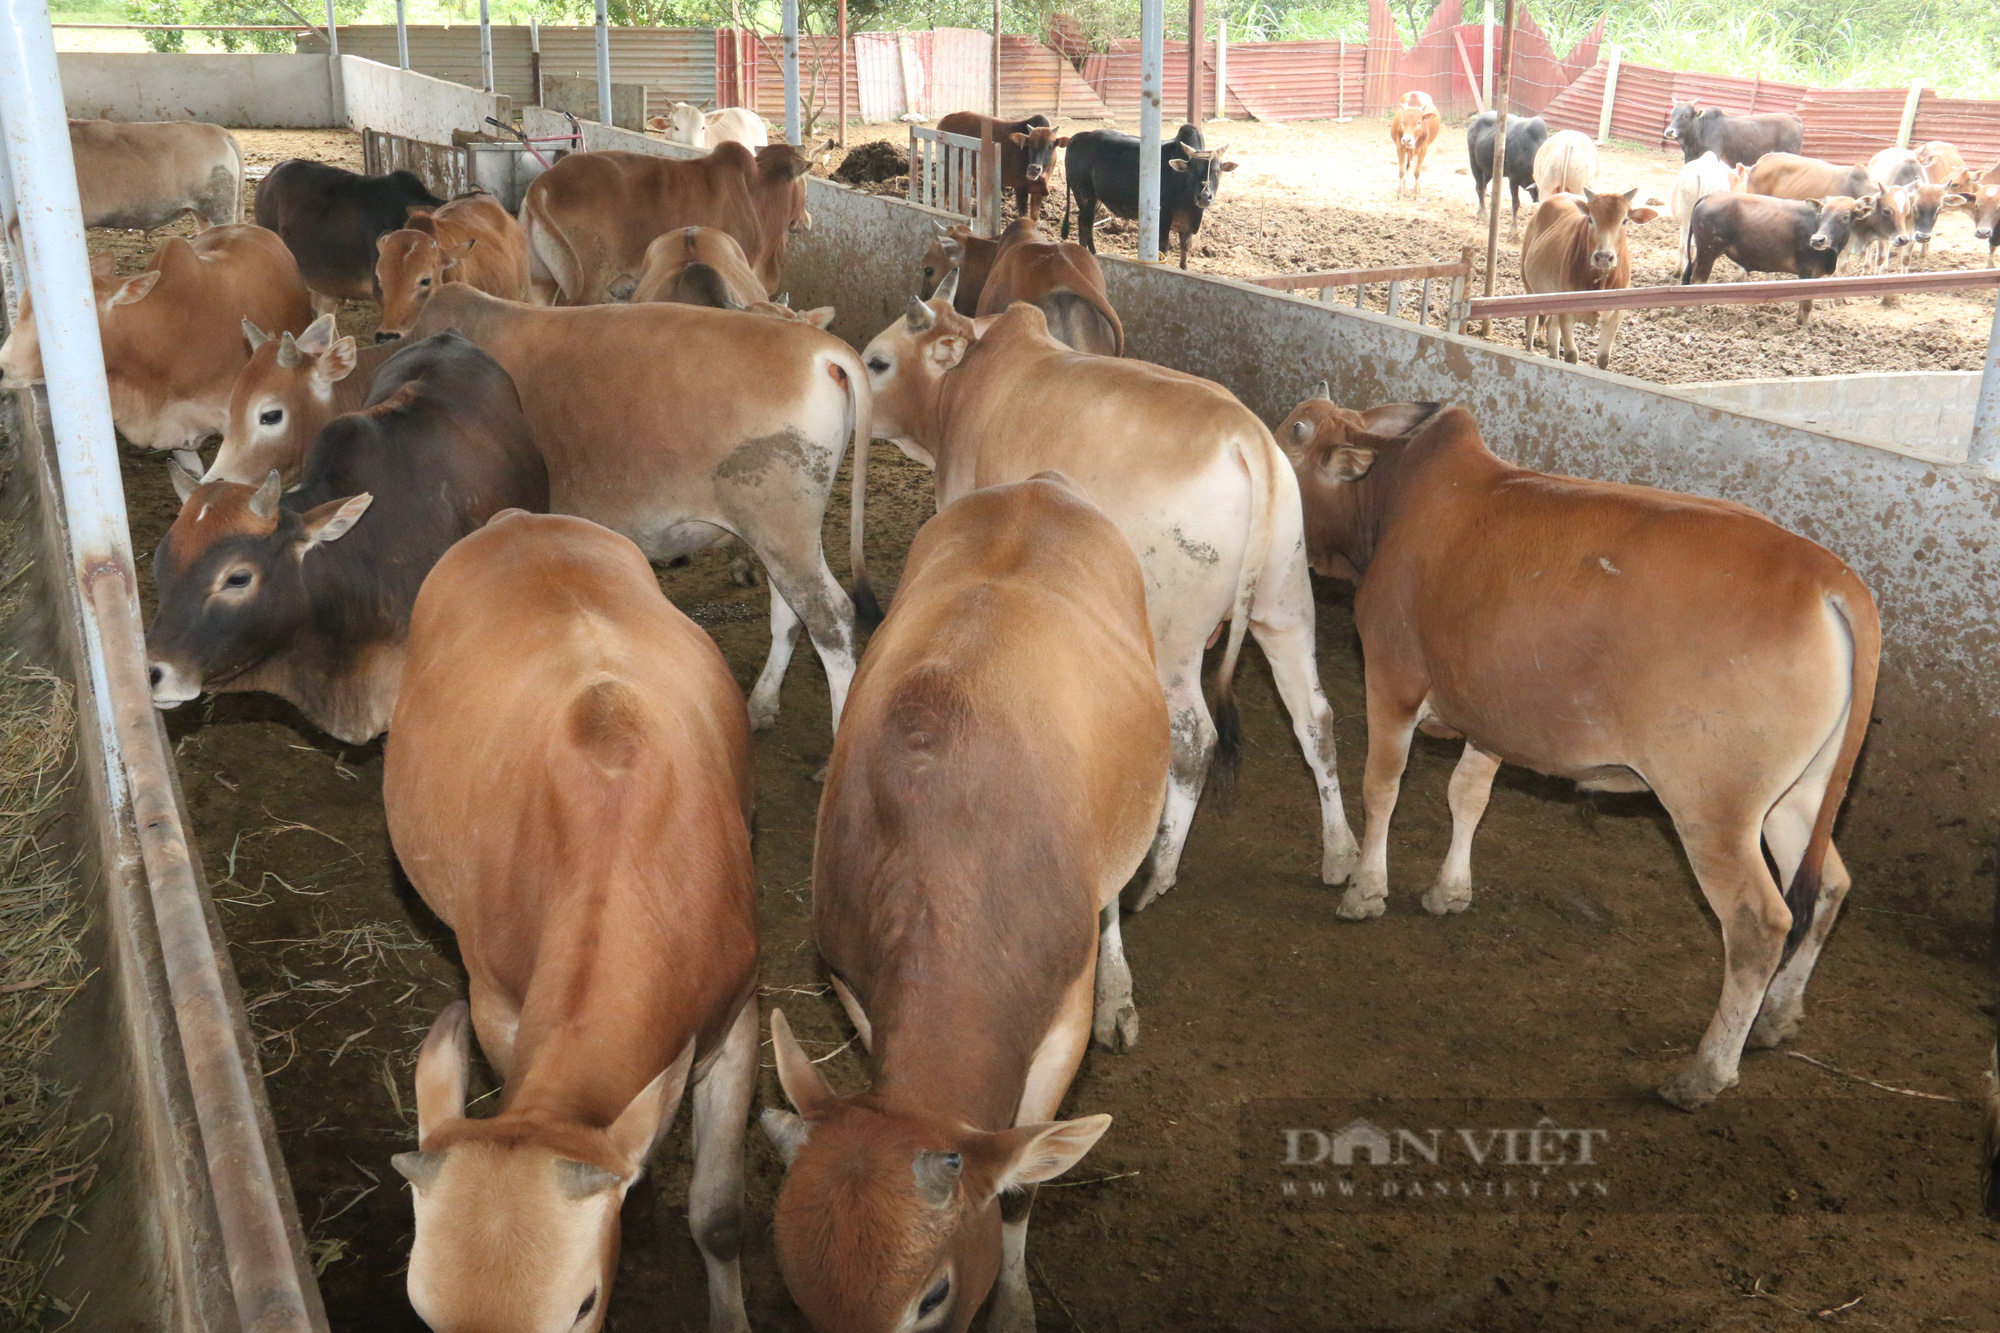 Chỉ nuôi bò vỗ béo bán Tết, lão nông dân xứ Mường kiếm tiền khủng - Ảnh 3.